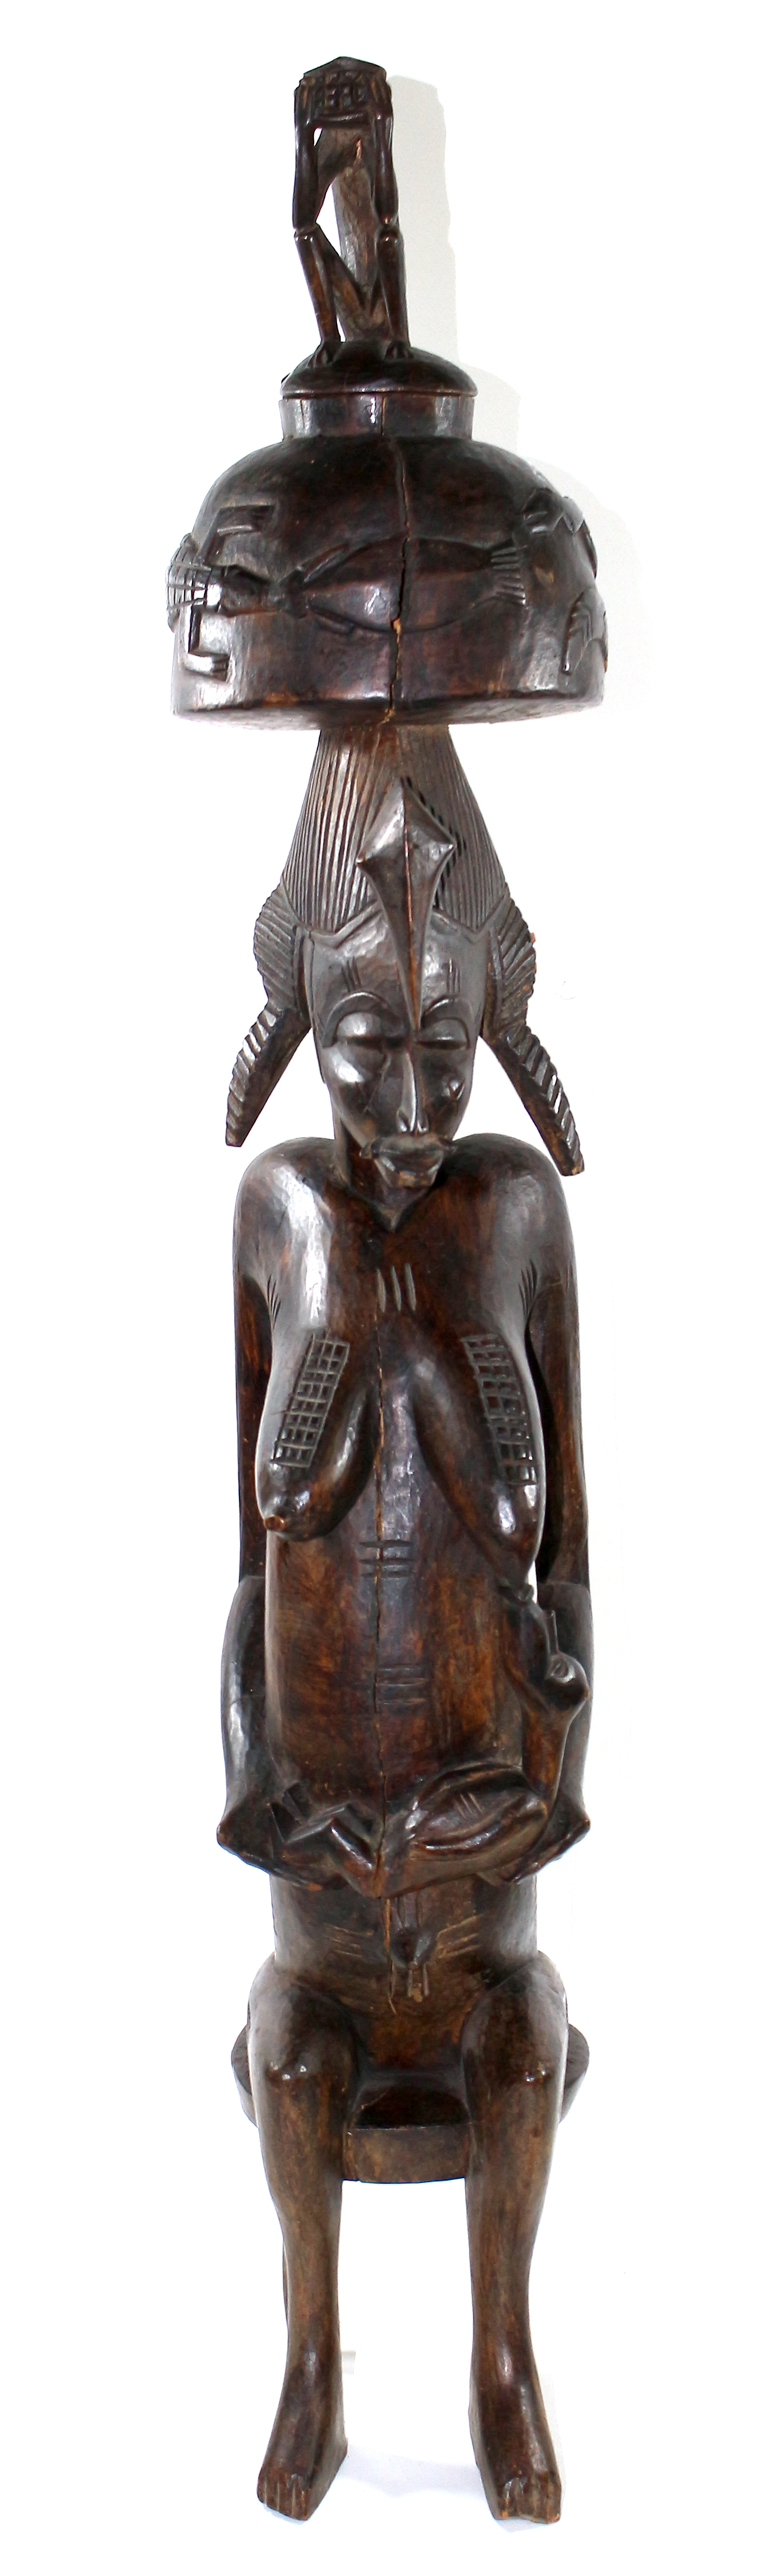 Senufo sitzende Mutterfigur | Bild Nr.5